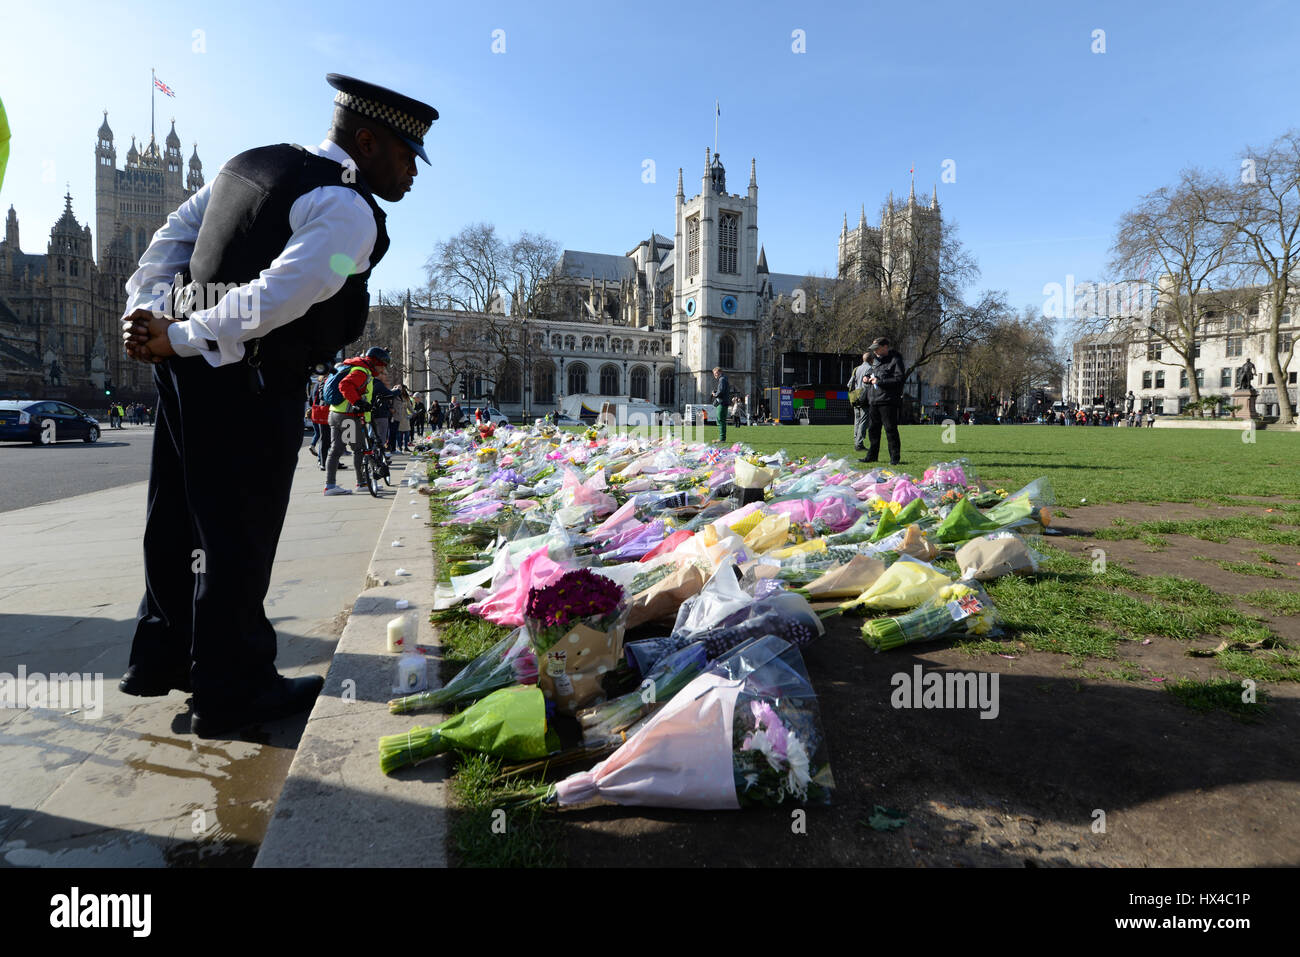 Suite à l'attaque terroriste contre le Parlement le mercredi 22 mars, de nombreux hommages ont été rendus dans la région. Hommages floraux à l'extérieur du Palais de Westminster Banque D'Images